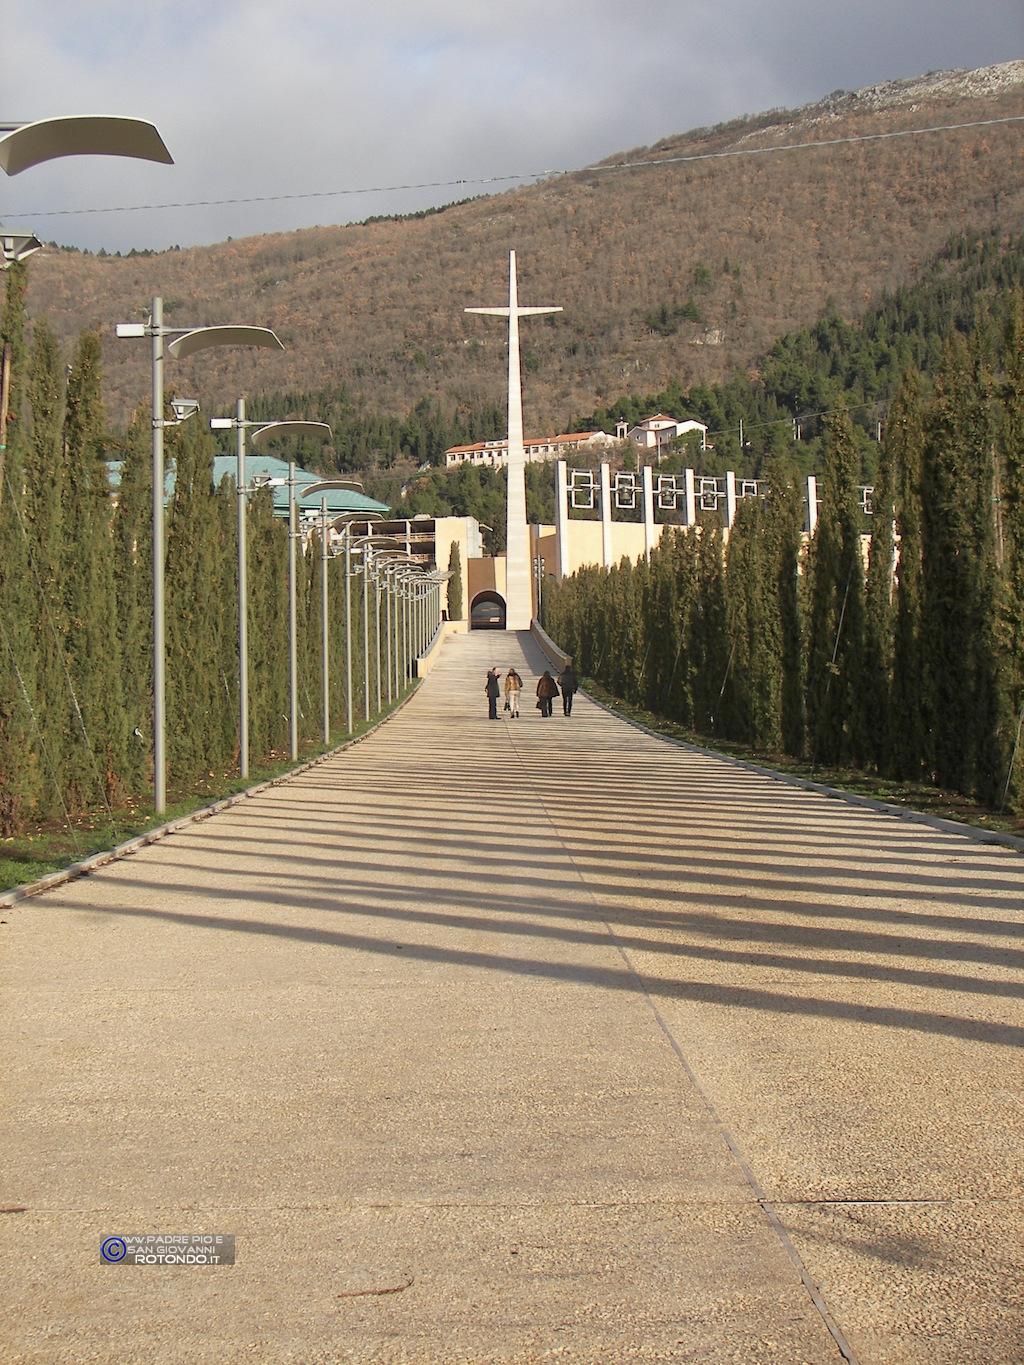 Chiesa S. Pio Da Pietrelcina Di Renzo Piano